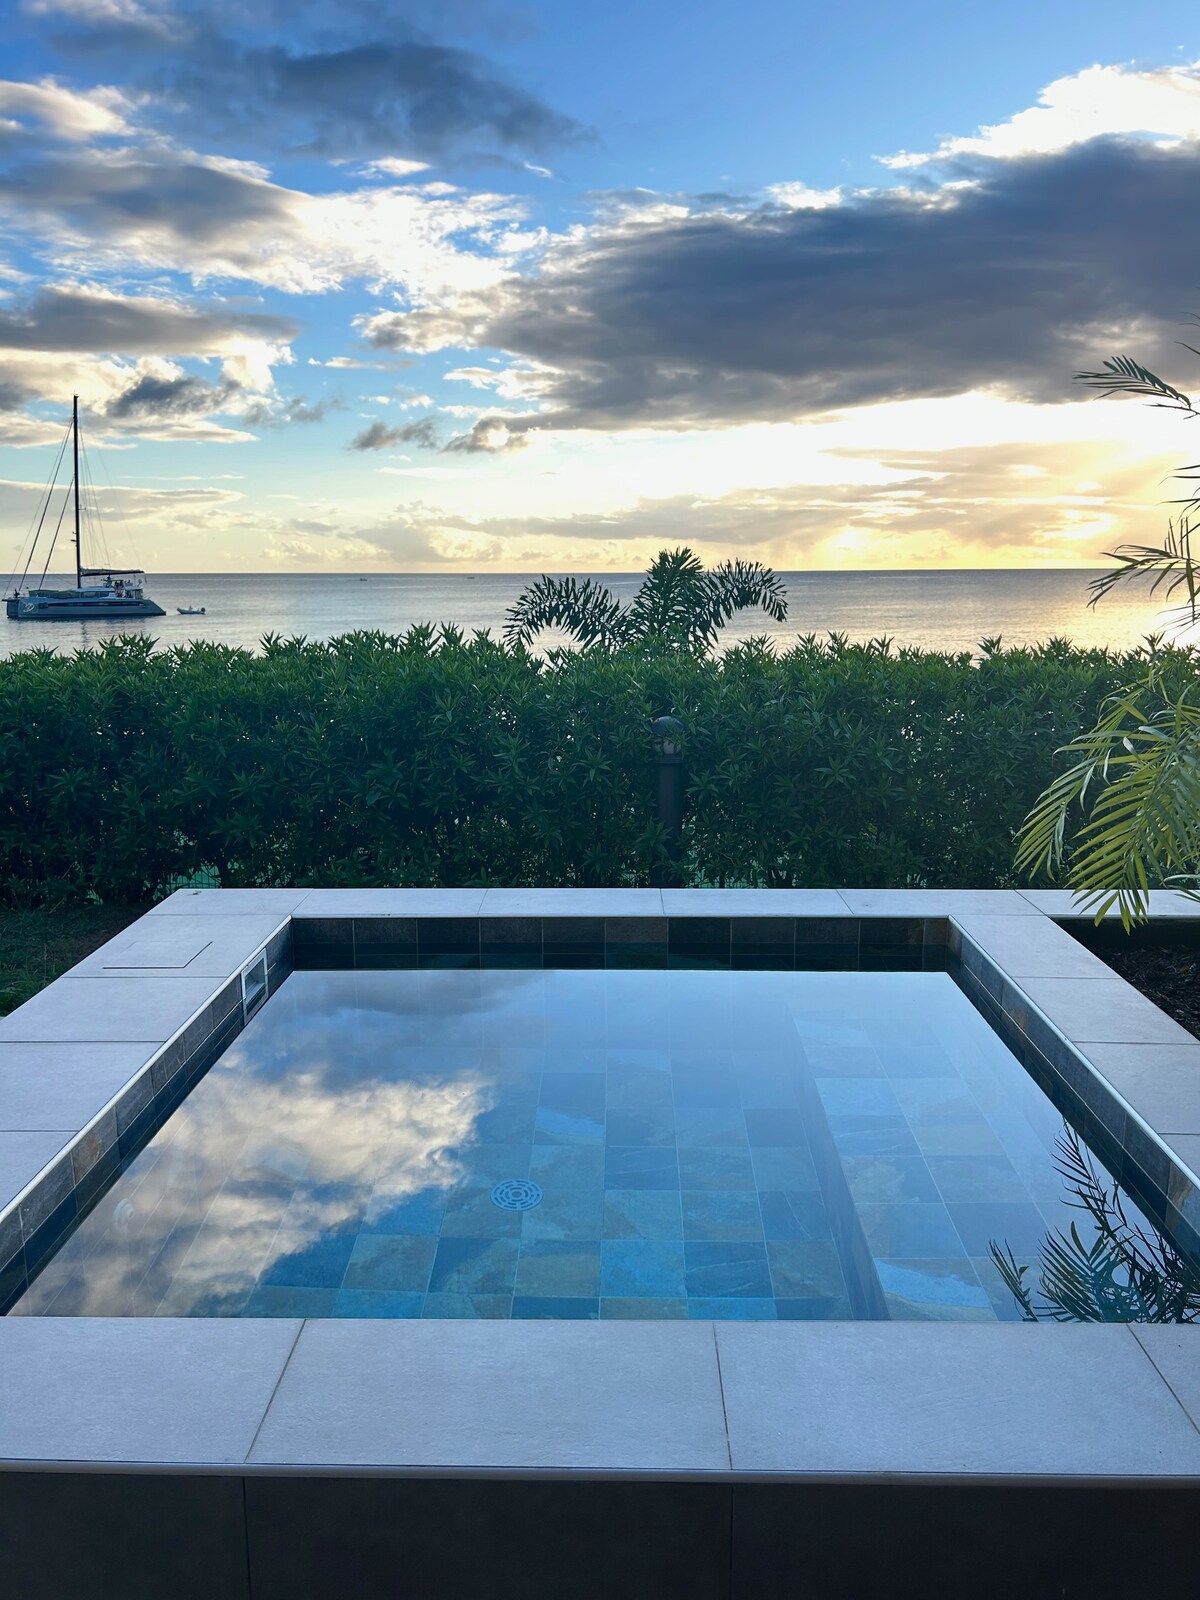 La Plage Martinique - Sea View and Plunge Pool